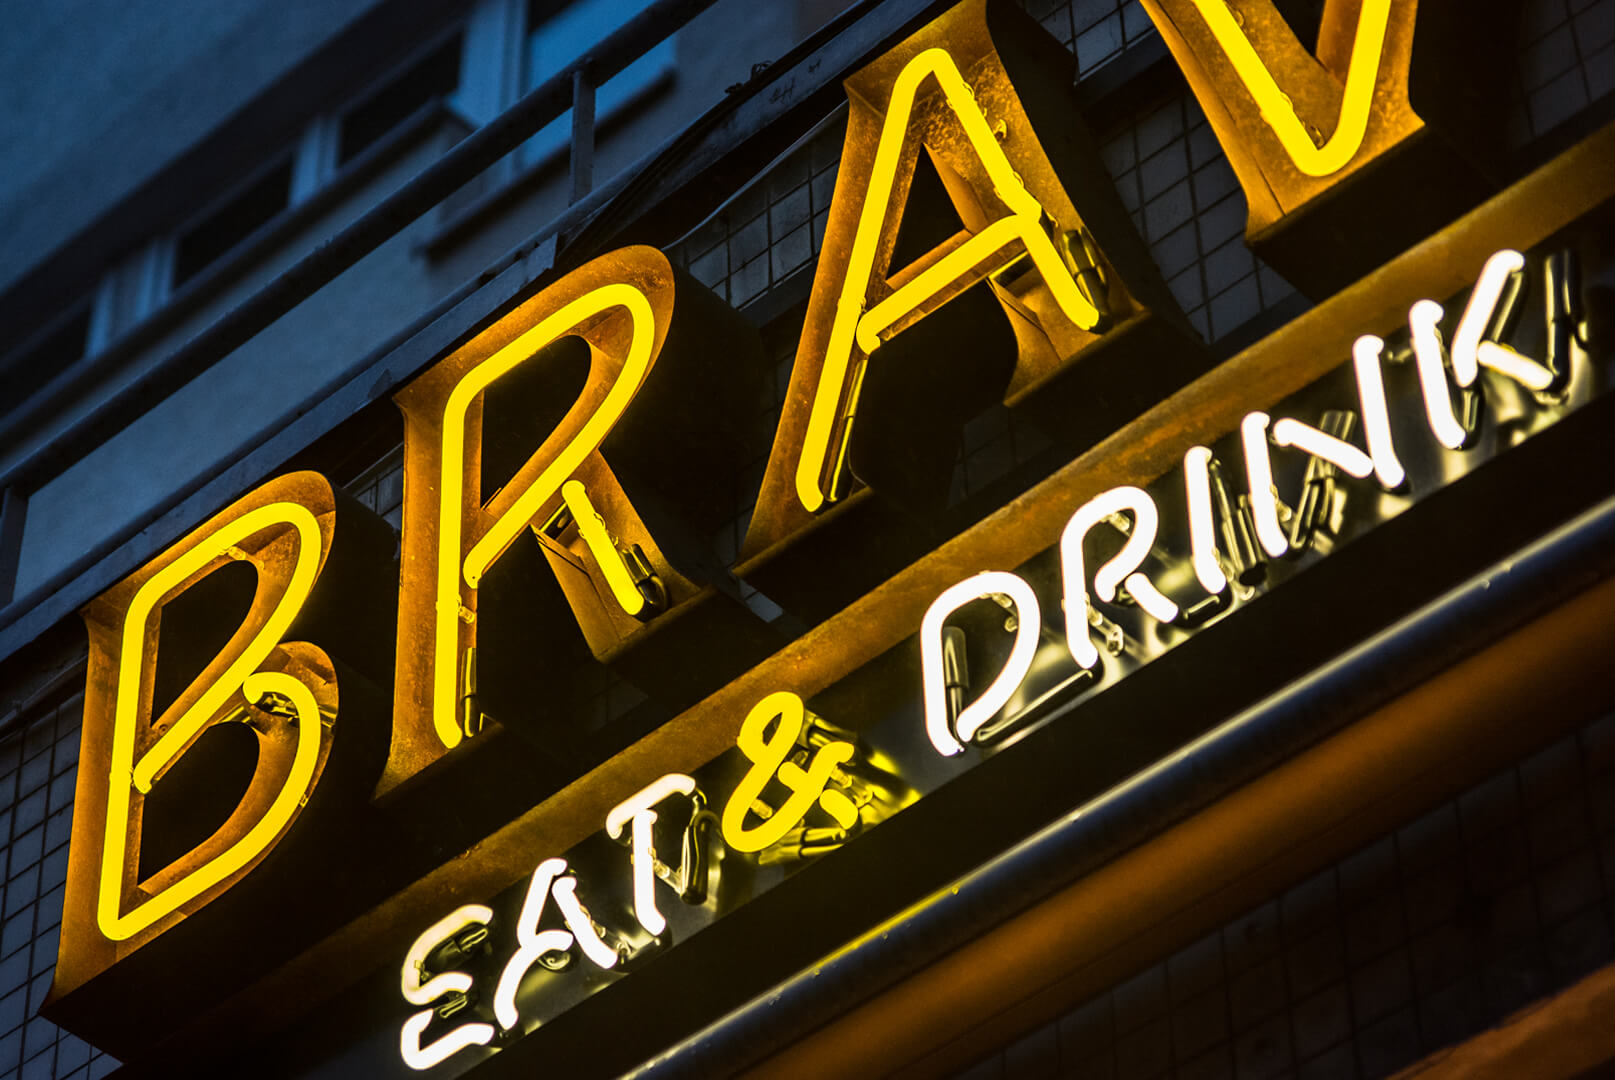 BRAVO - neon-bravo-eat-drink-neon-über-dem-eingang-zum-restaurant-neon-auf-dem-regal-neon-auf-dem-regal-wand-neon-unter-licht-neon-inside-stahl-neon-auf-der-extra-wand-neon-warsaw-zentrale